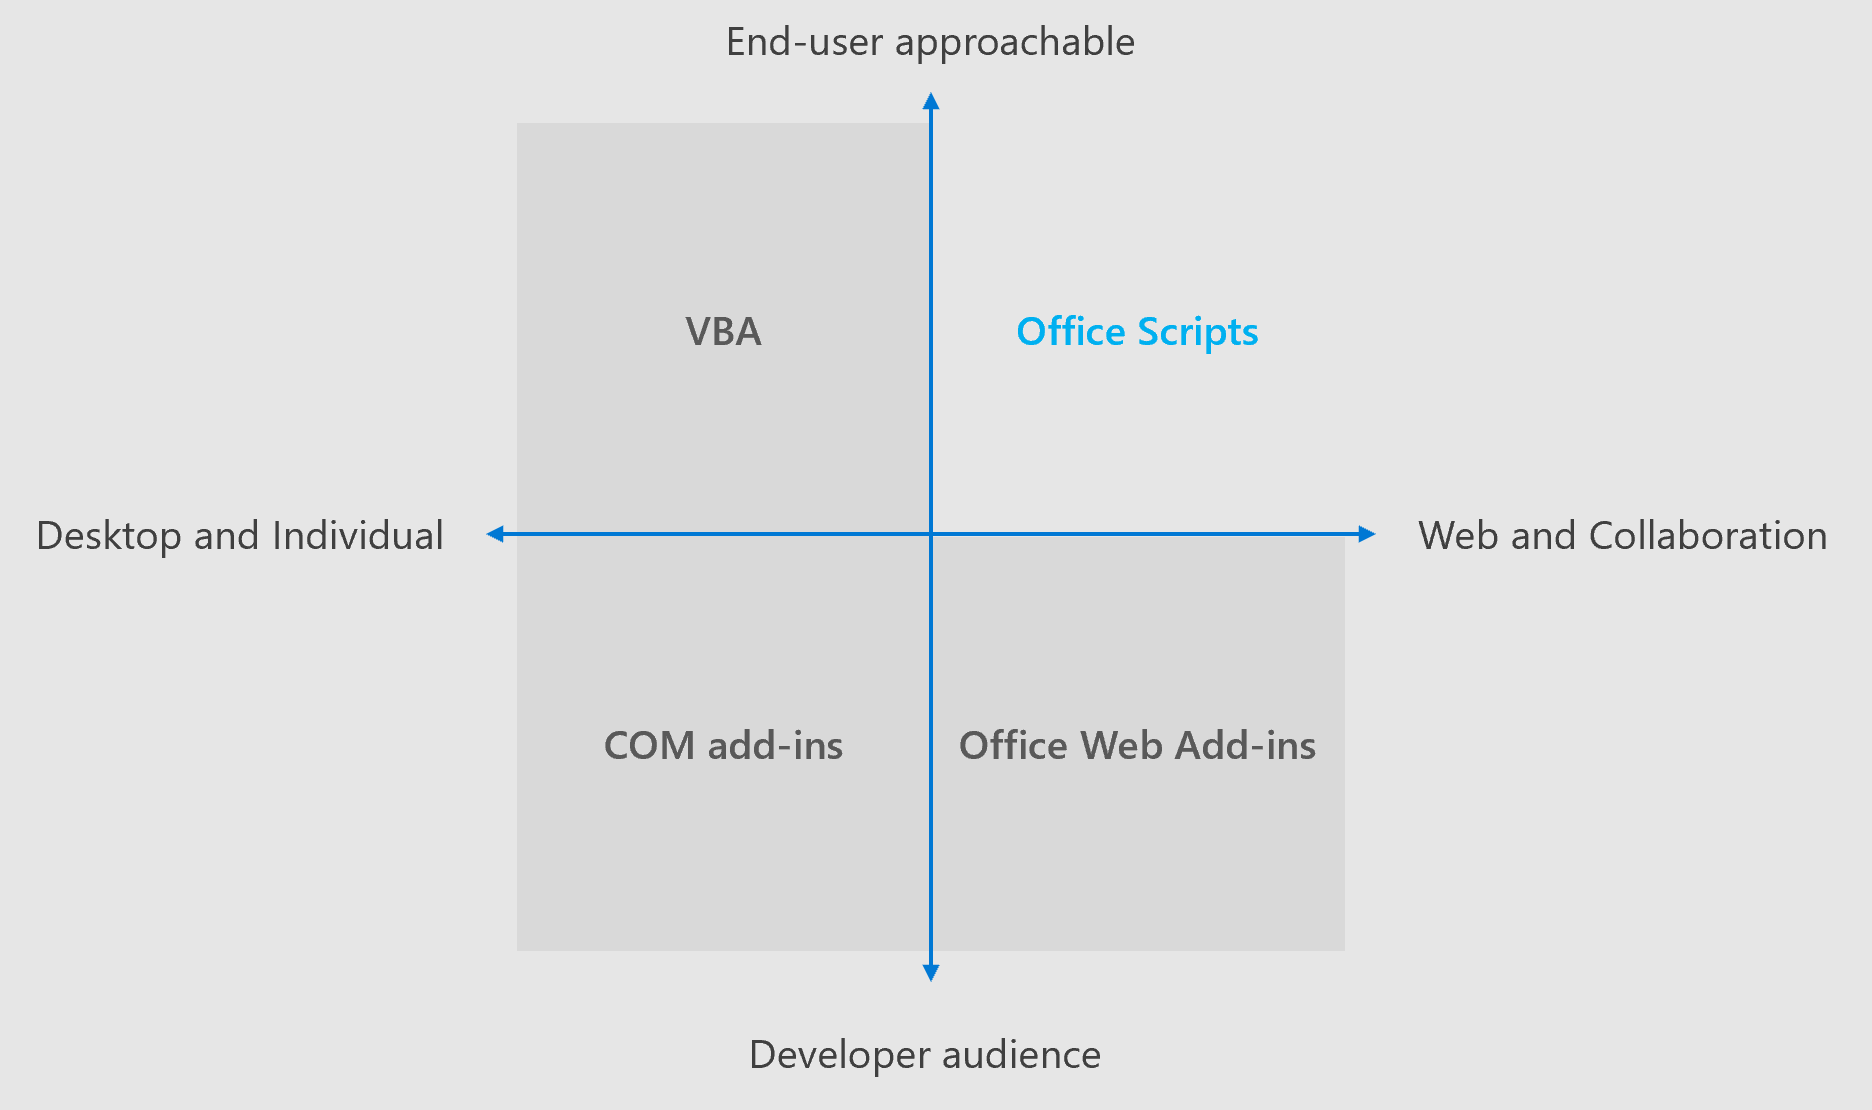 さまざまな Office 拡張機能ソリューションのフォーカス領域を示す 4 象限図。Office スクリプトと Office Web アドインの両方が、クロスプラットフォームエクスペリエンスとコラボレーションに重点を置いています。Office スクリプトはエンド ユーザーに対応しますが、Office Web アドインはプロの開発者を対象としています。